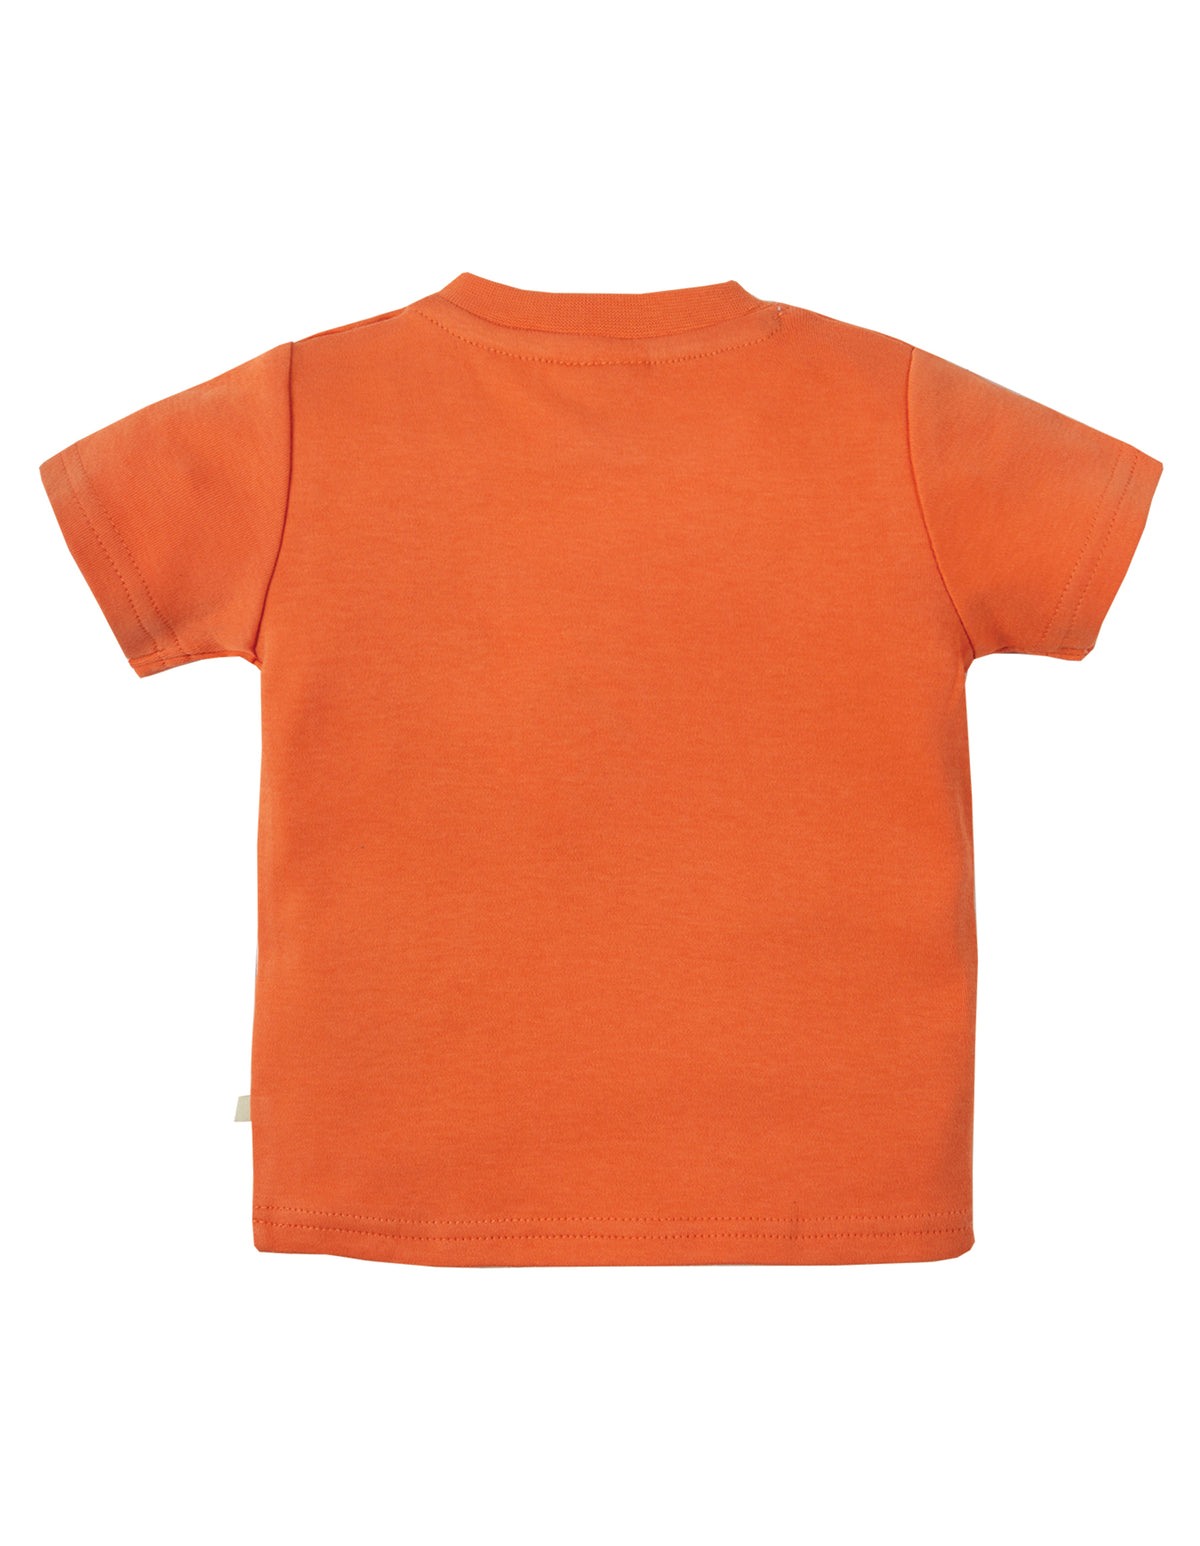 Kurzarm T-Shirt mit Grashüpfer Applikation ( 0-3, 6-12 Monate ) von Frugi